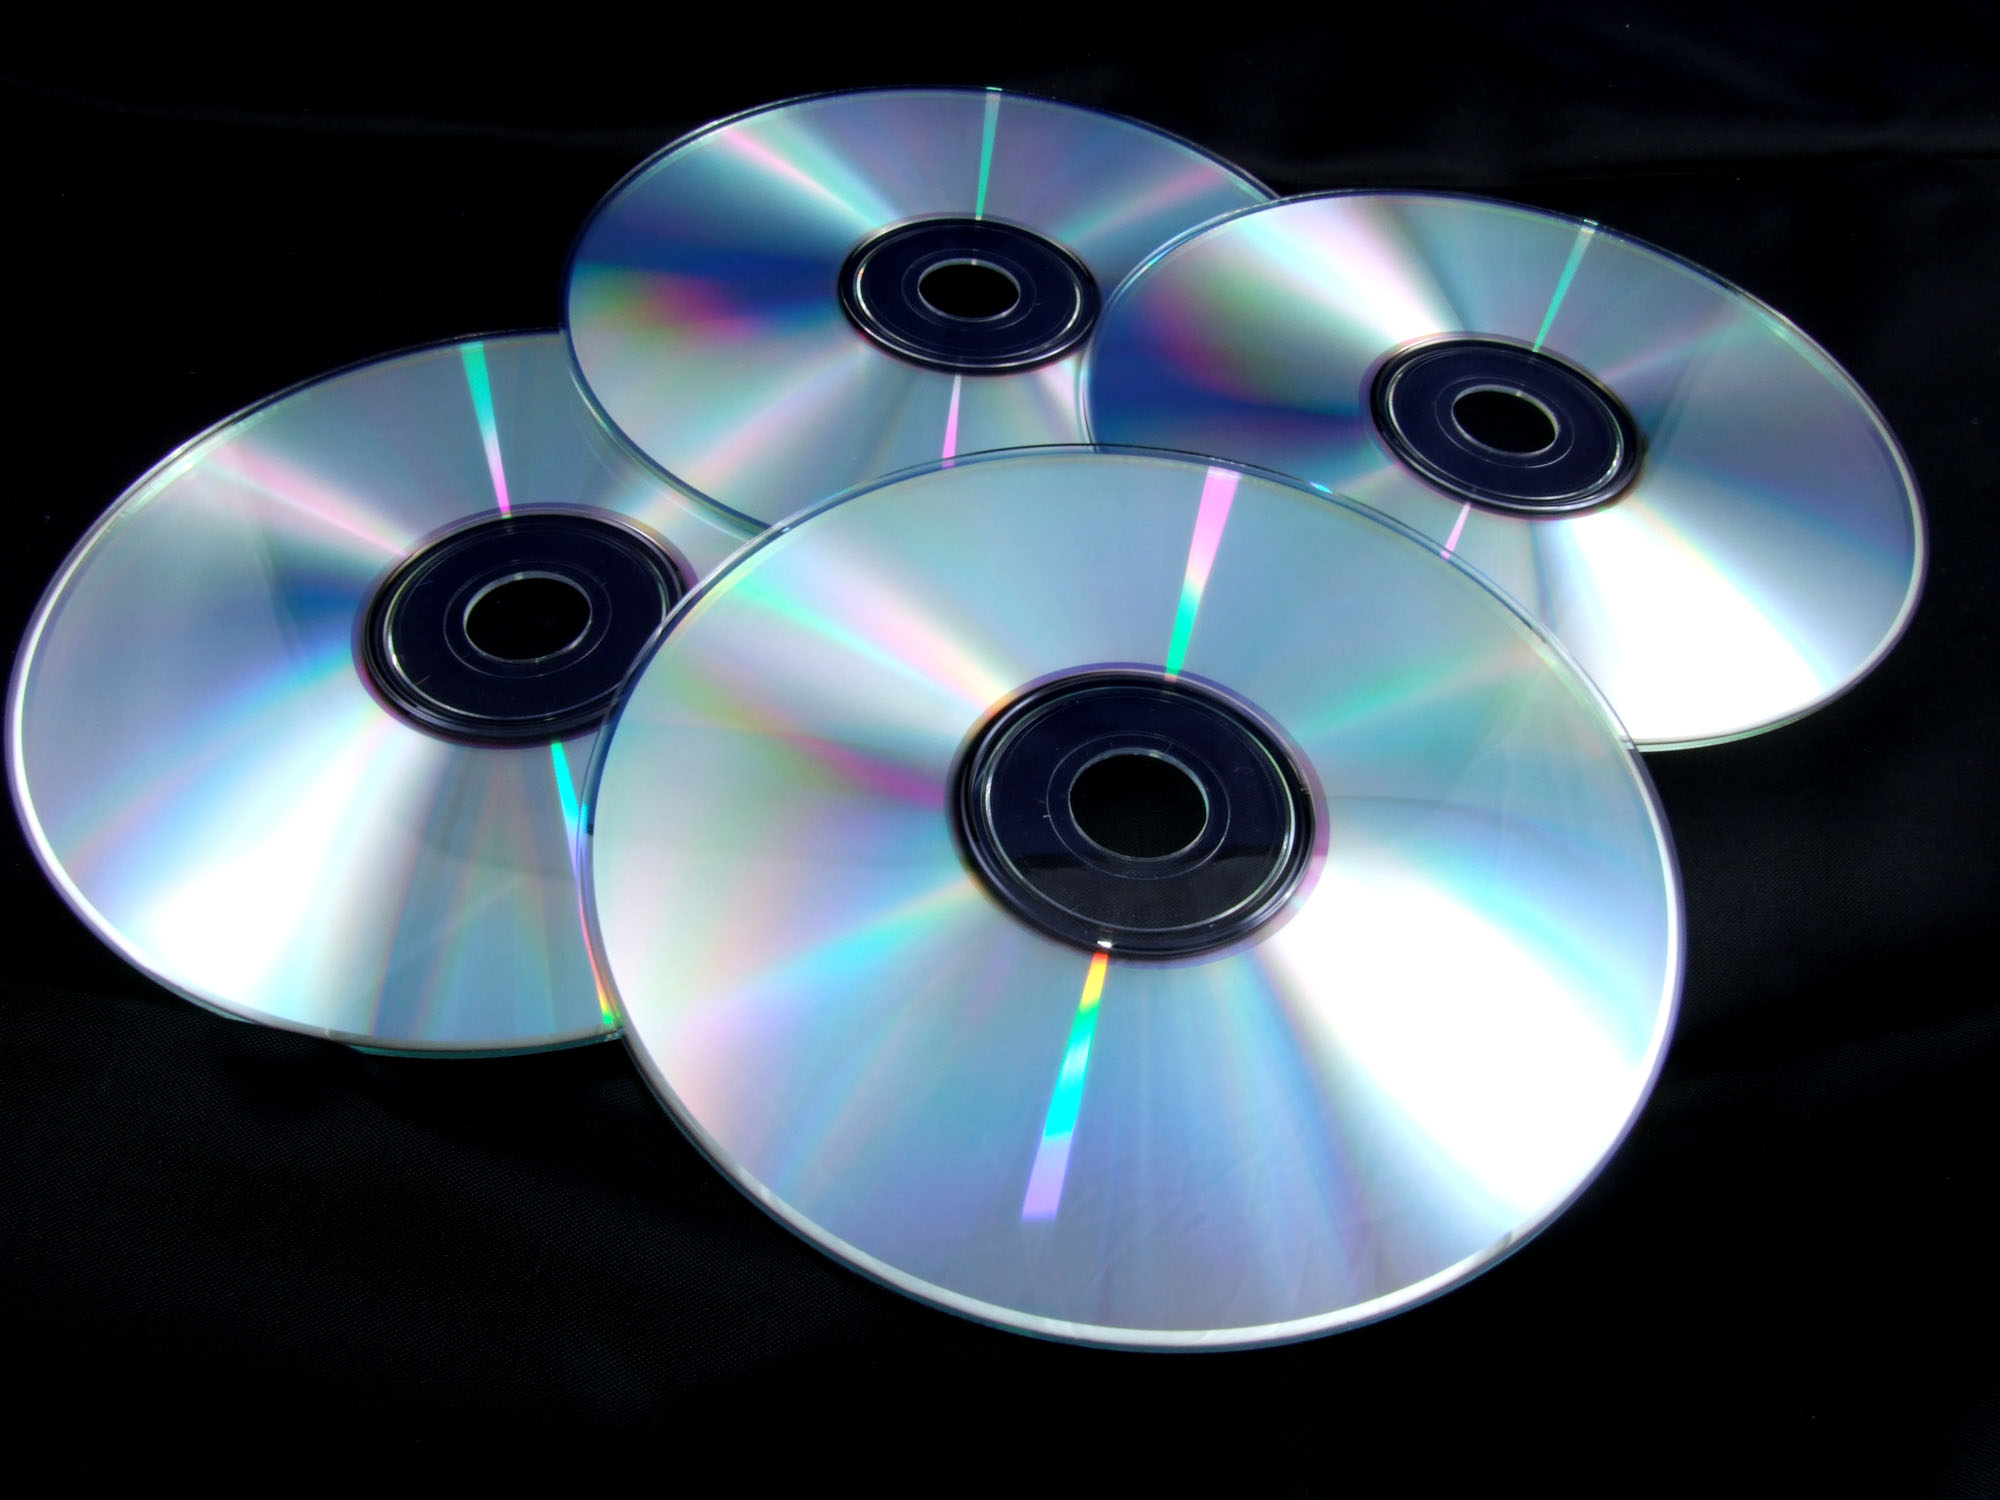 Cd user. Компакт – диск, Compact Disc (CD). Лазерный компакт-диск (CD, CD-ROM).. DVD-диски (DVD – Digital versatile Disk, цифровой универсальный диск),. Оптические лазерные диски.